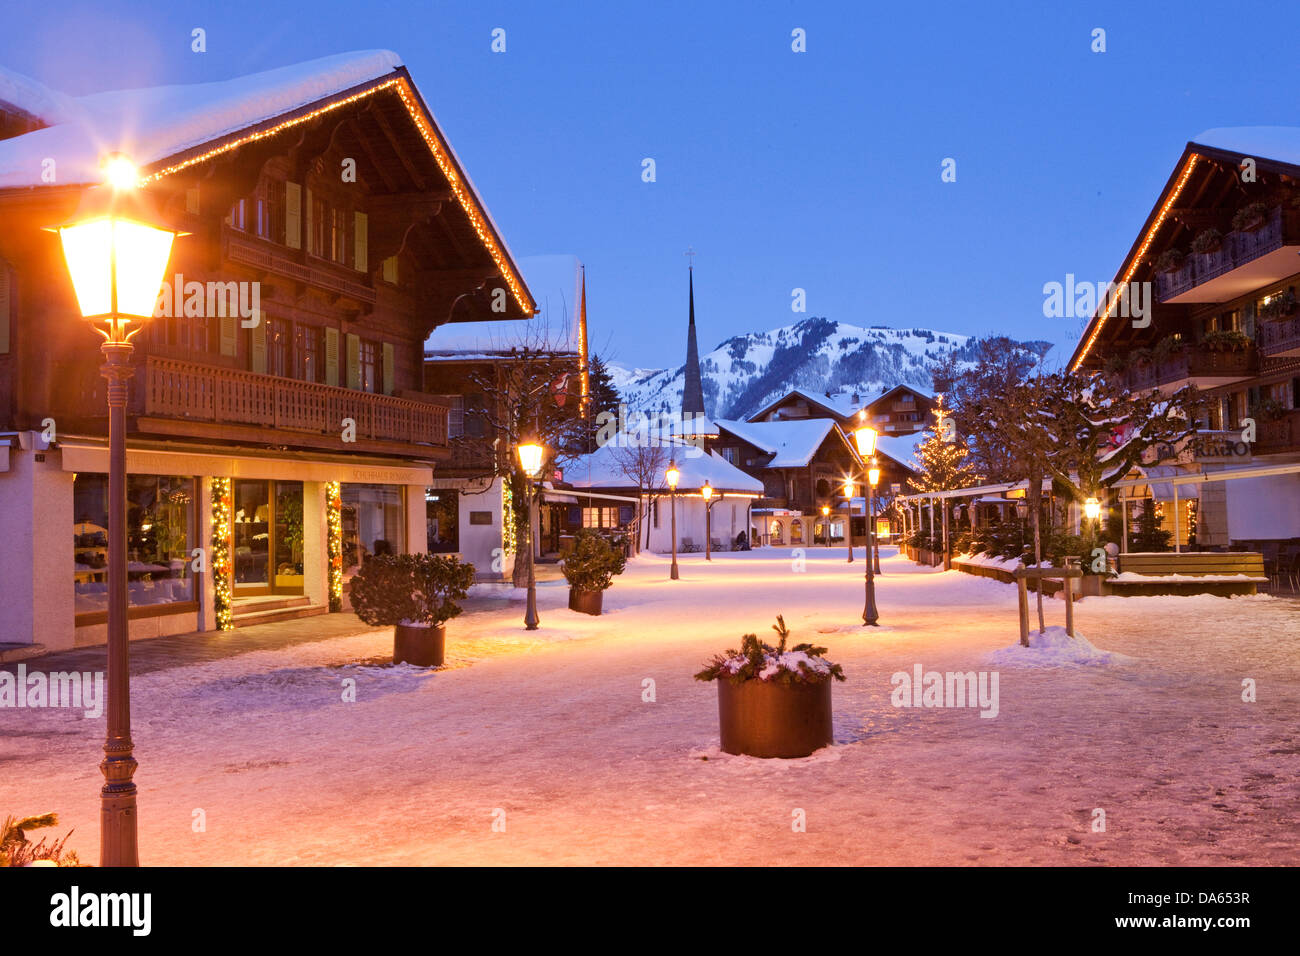 Gstaad, inverno, villaggio, notte, scuro, il cantone di Berna Oberland Bernese, Svizzera, Europa, luci, chalets Foto Stock